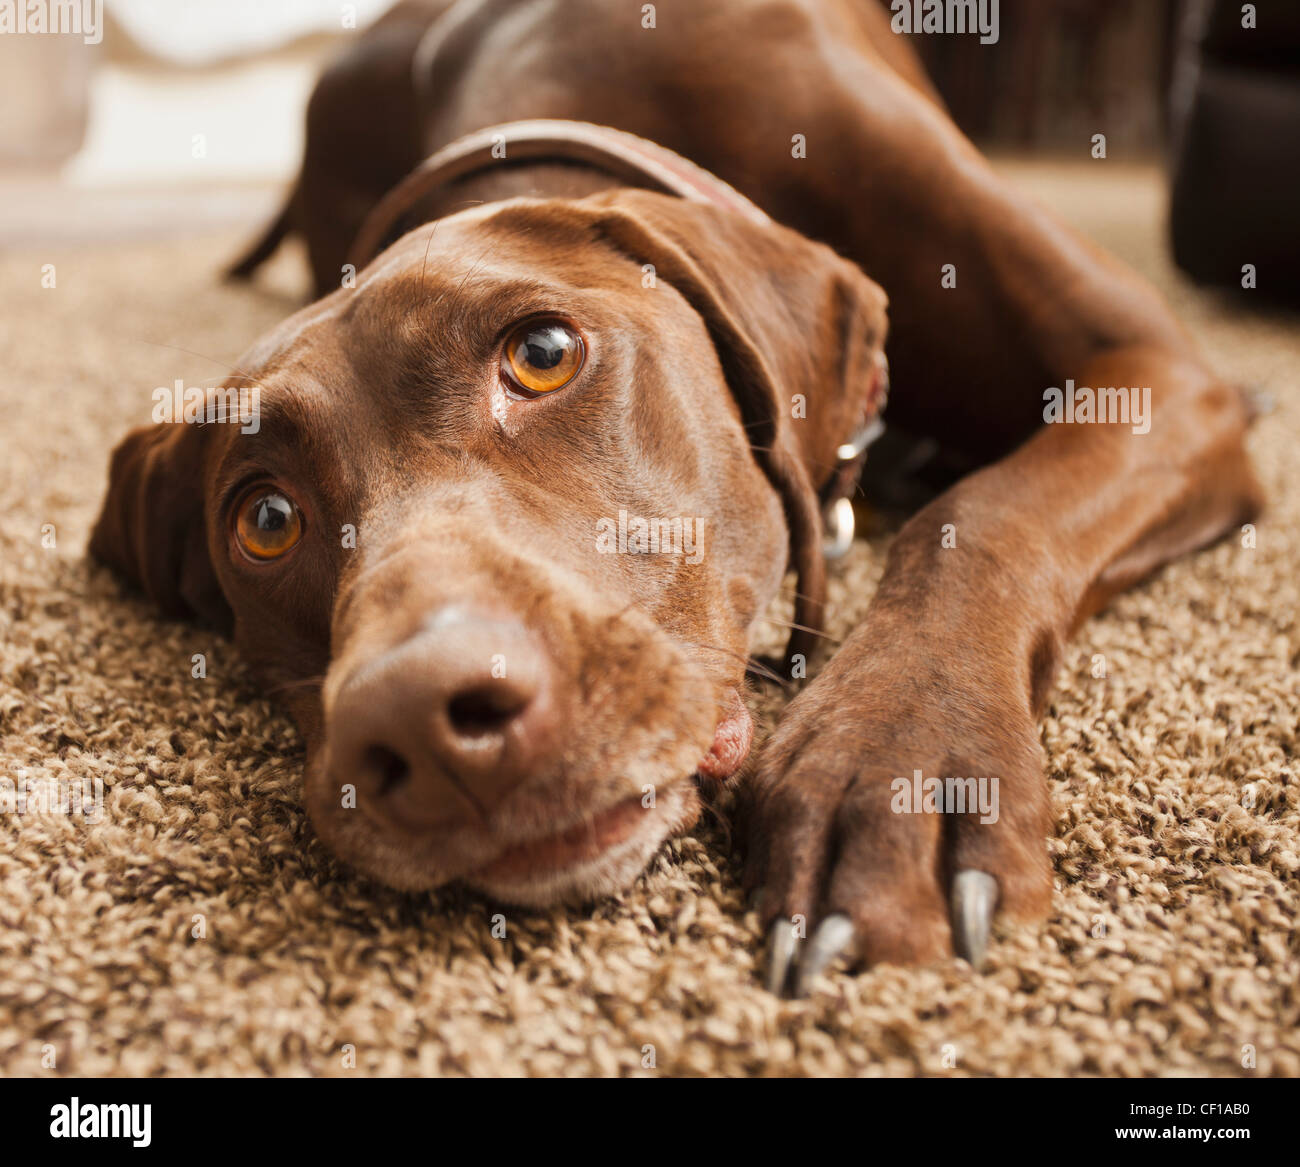 Nahaufnahme des Hundes auf Boden Stockfoto